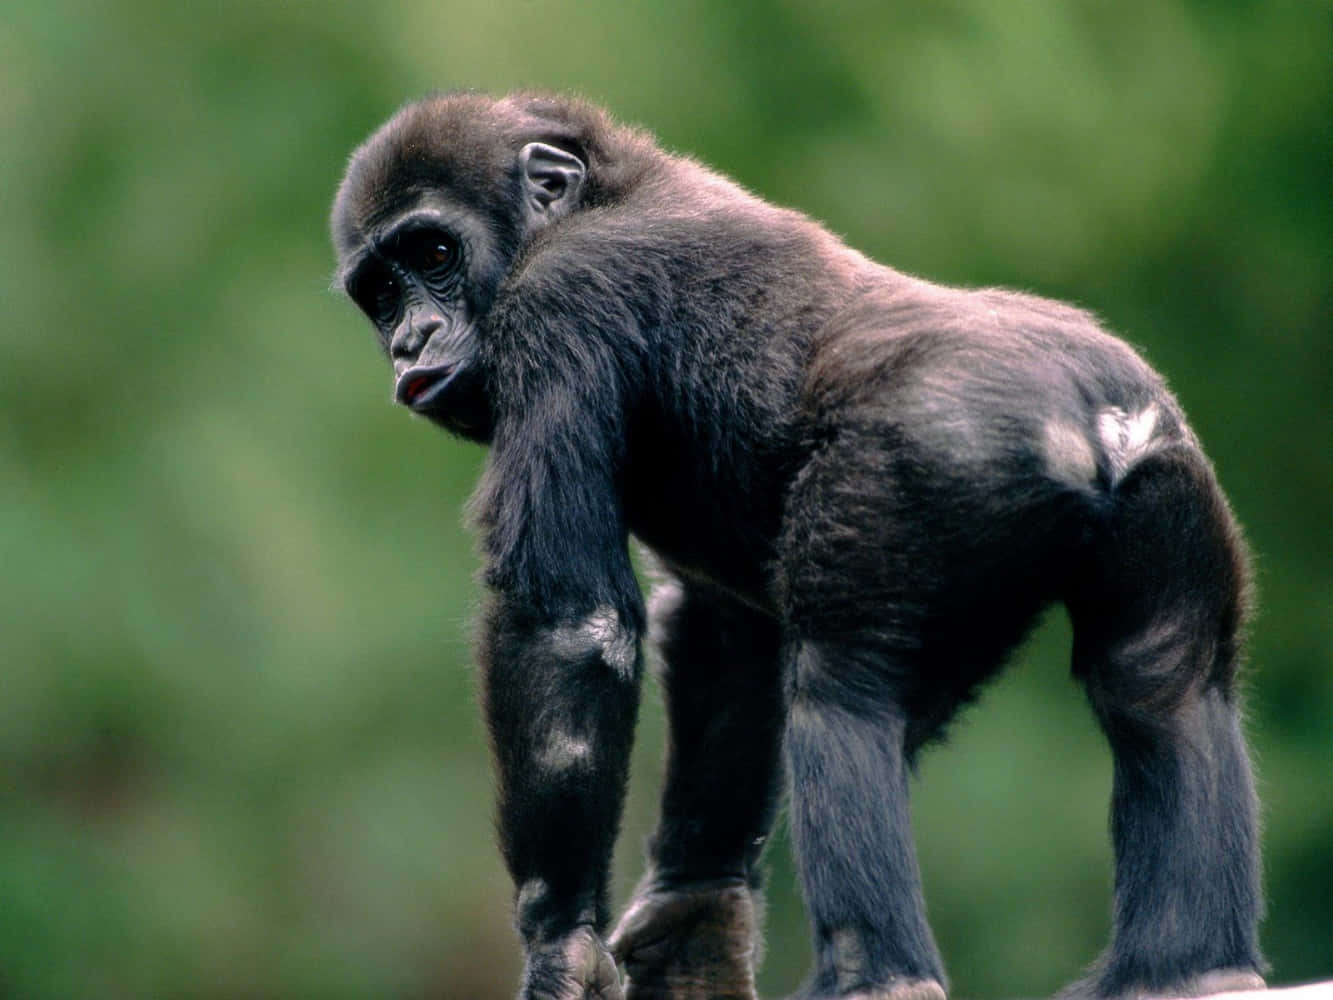 Imágenesdivertidas De Un Gorila Mostrando El Trasero.